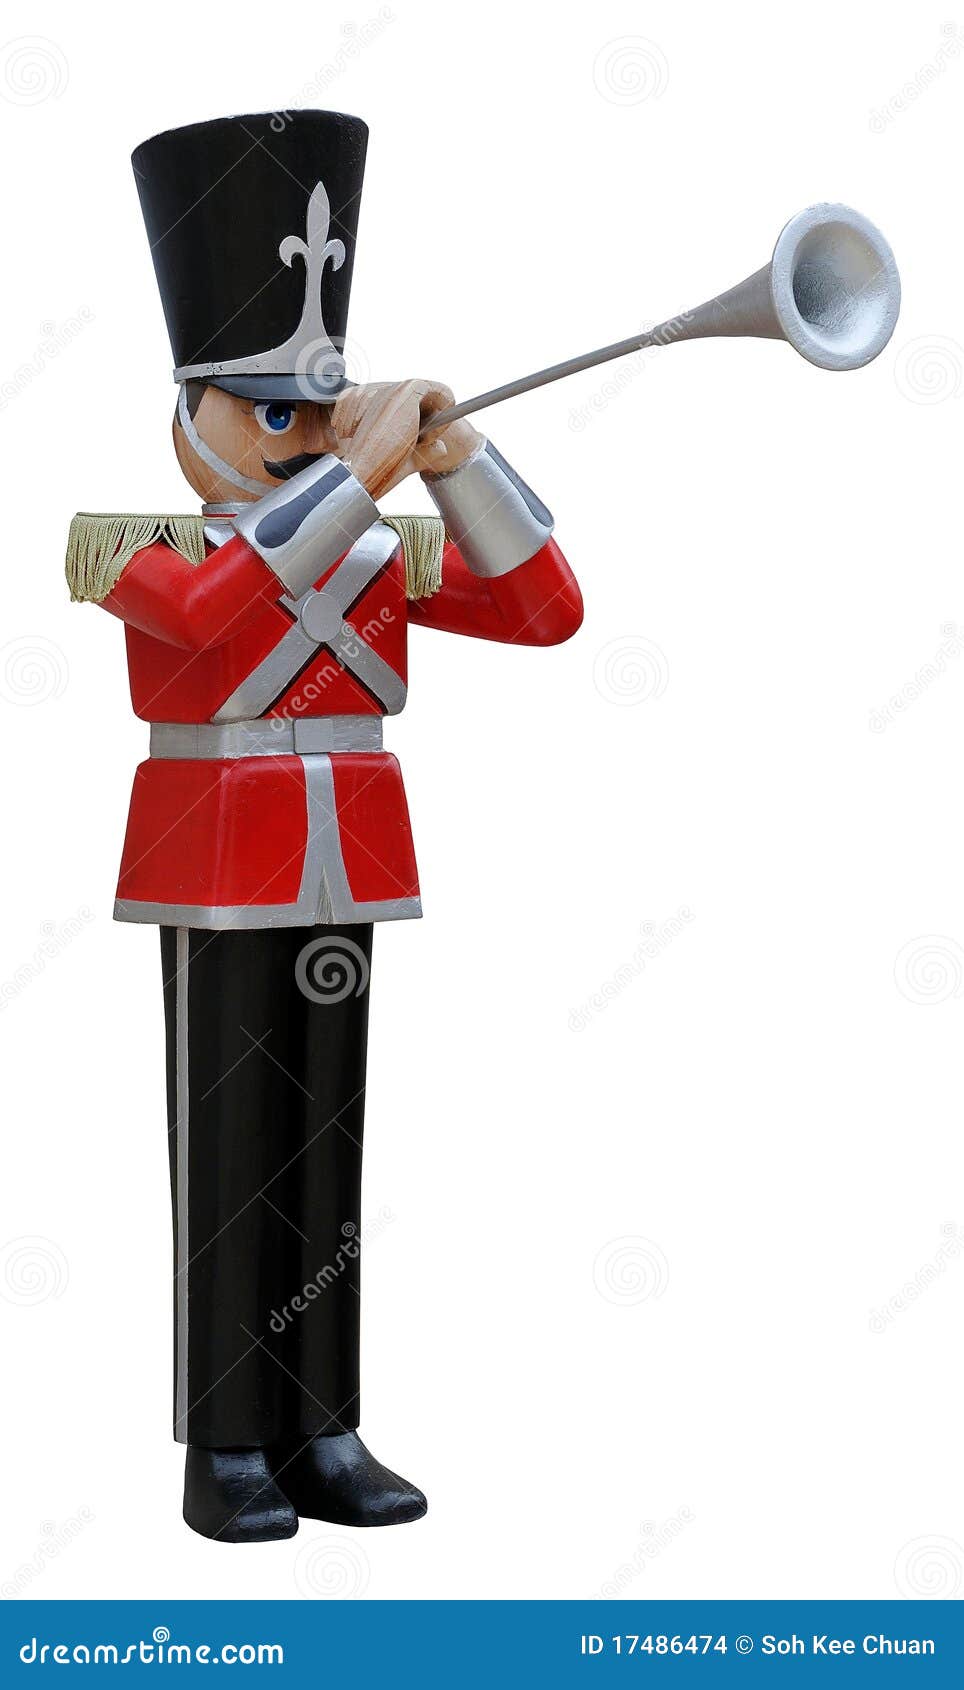 toy soldier trumpeter